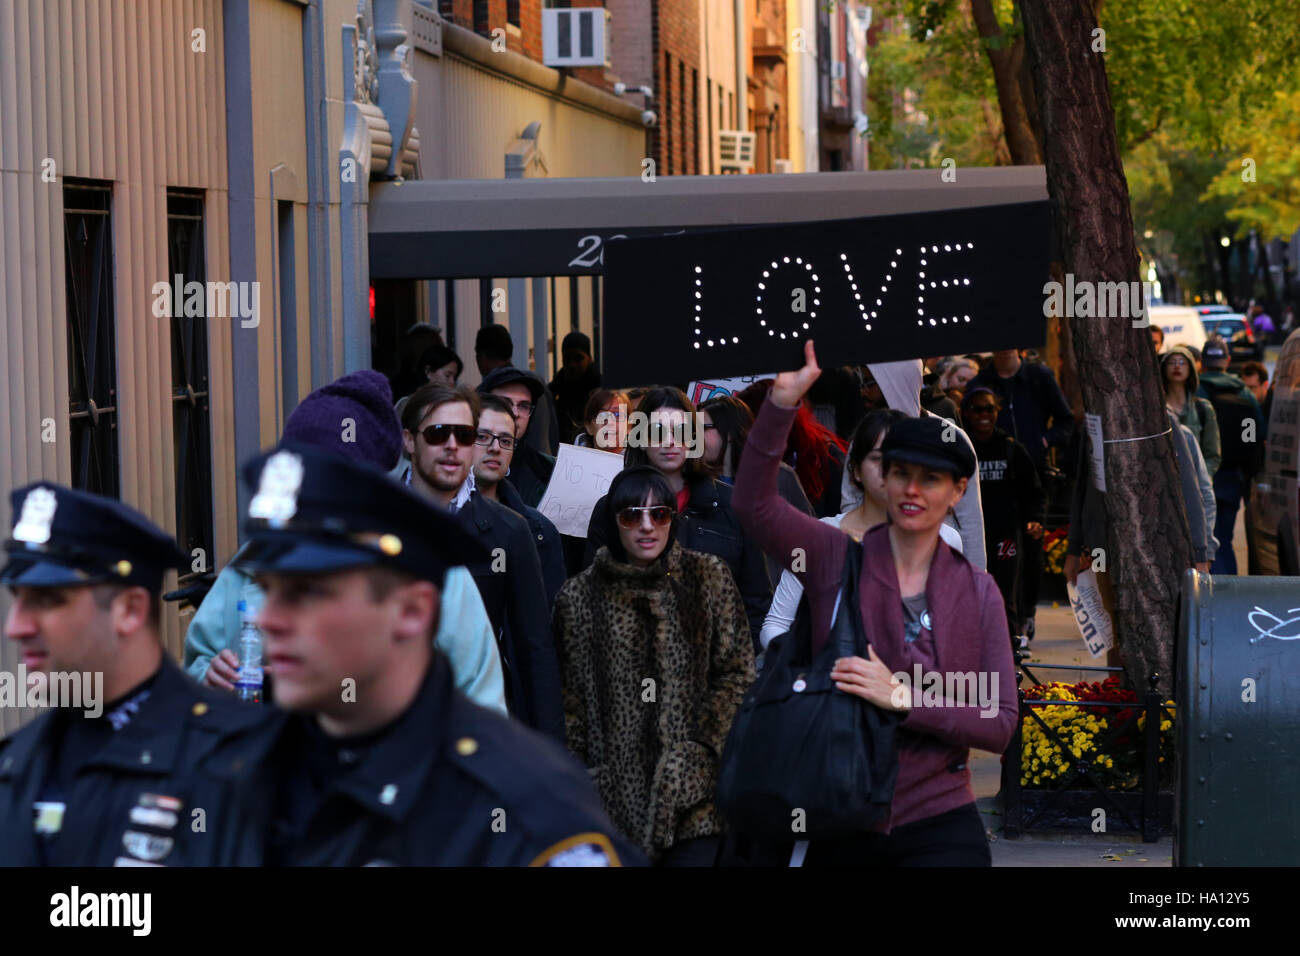 Tenendo un cartello luminoso, 'amore' ad una dimostrazione. Foto Stock